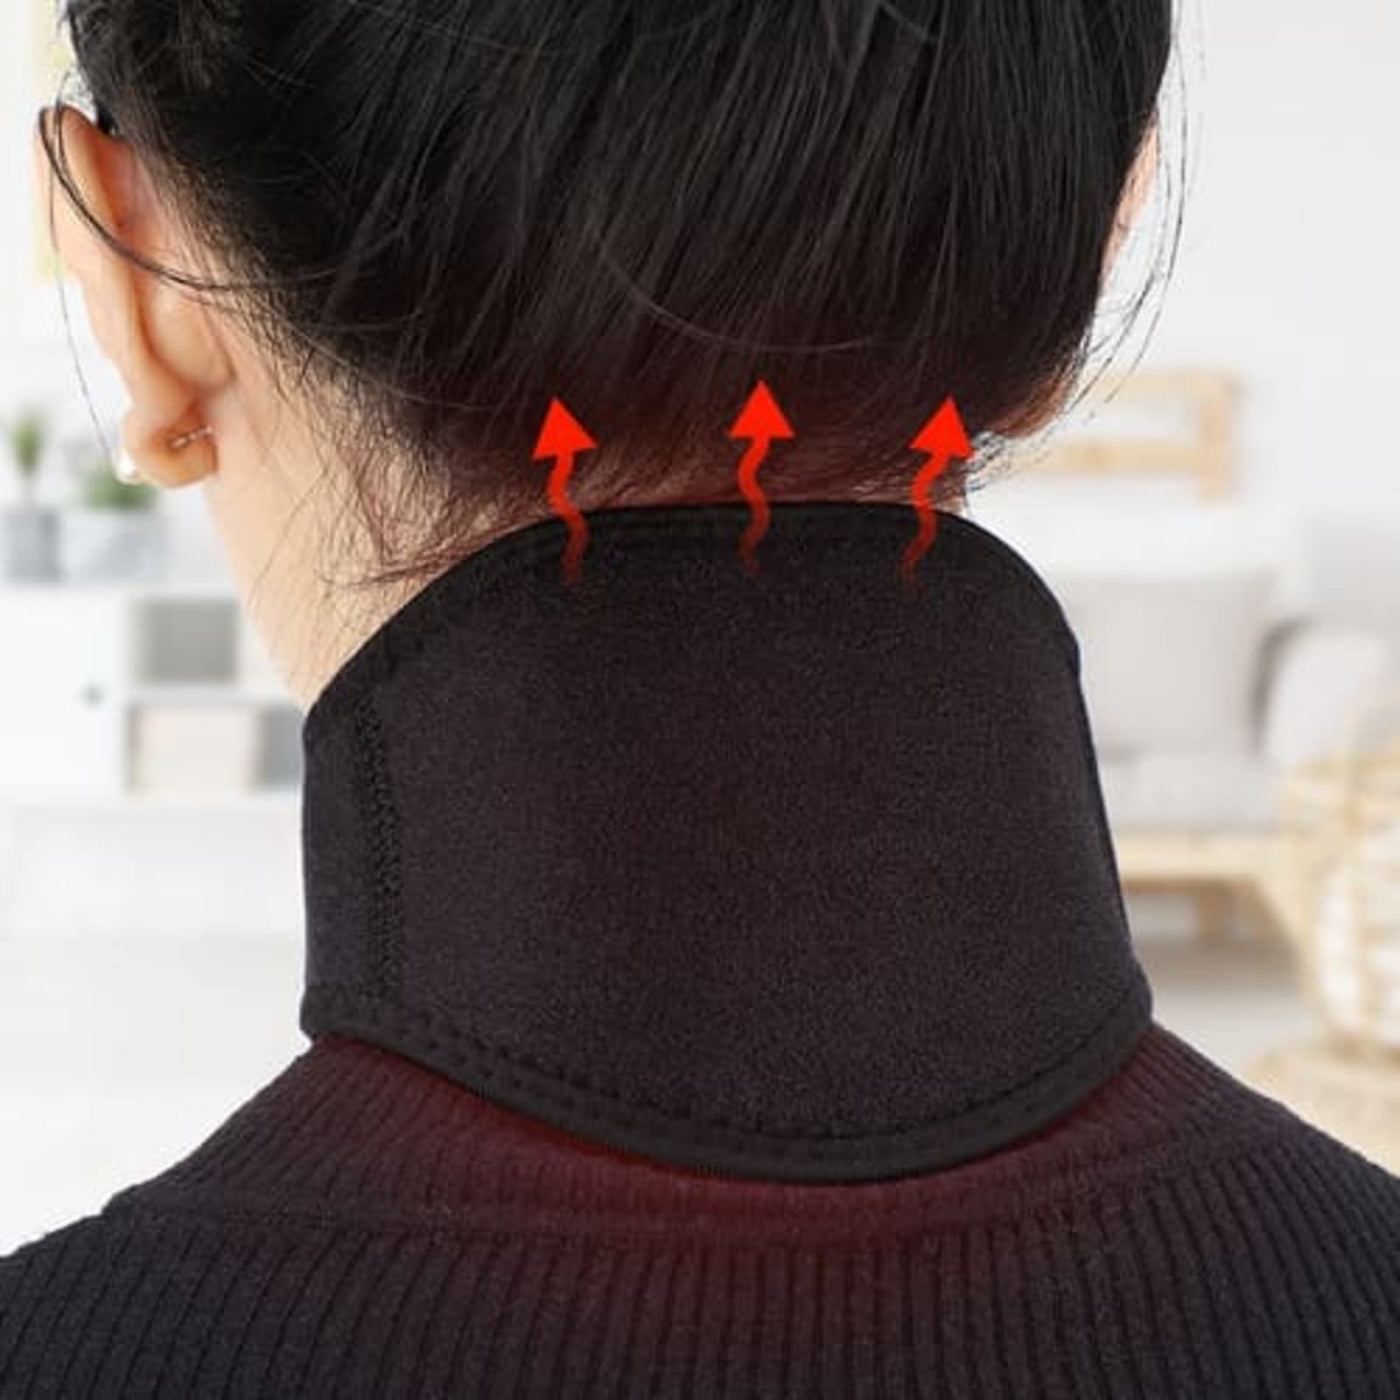 Soporte para Cuello – Almohadilla térmica con imán natural, collar de cuello ajustable